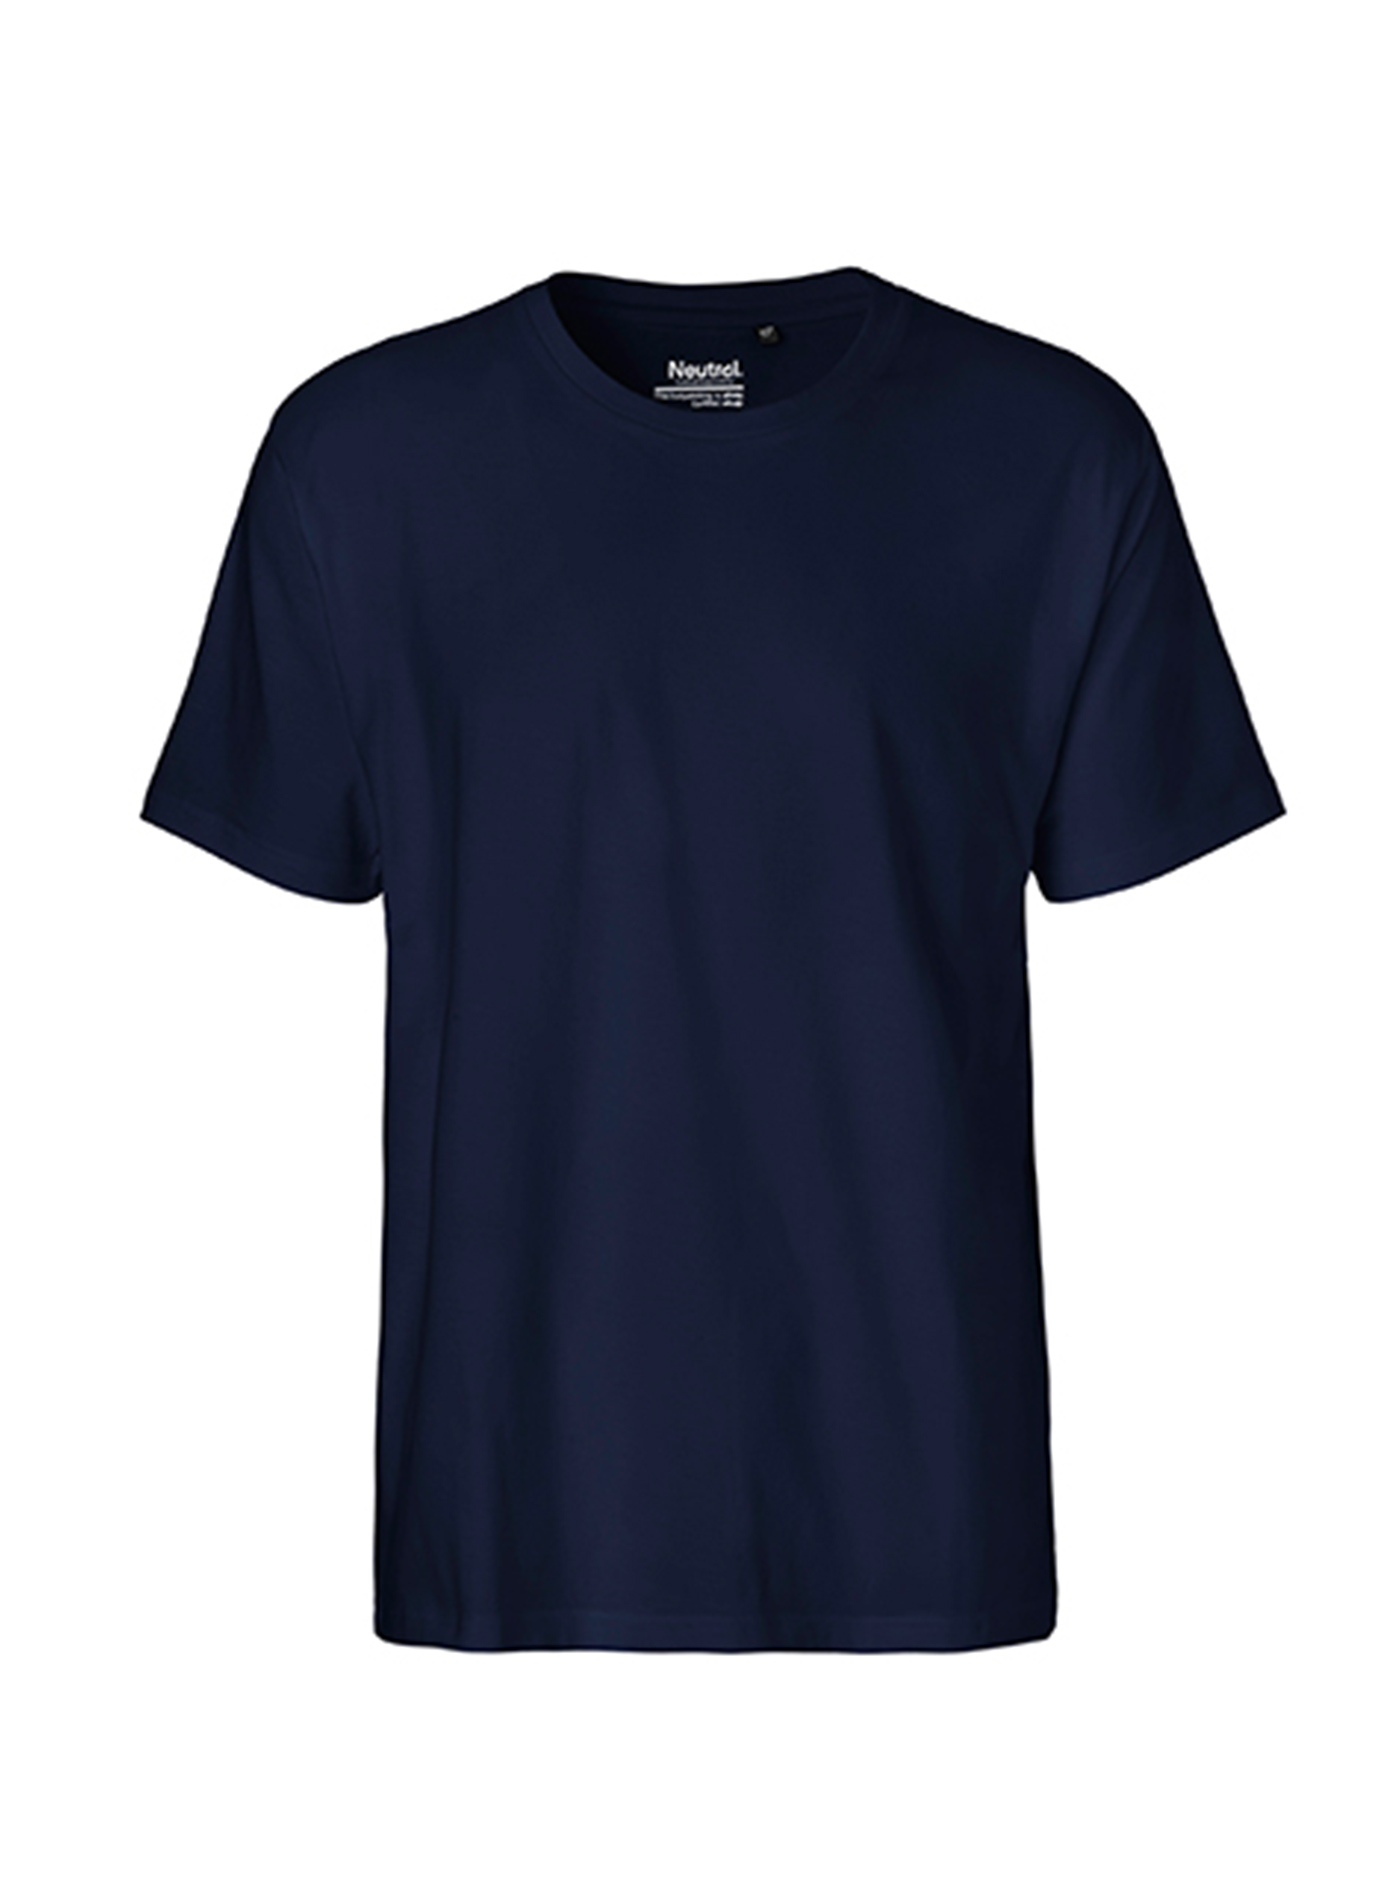 Pánské tričko Neutral Classic - Námořní modrá XXL